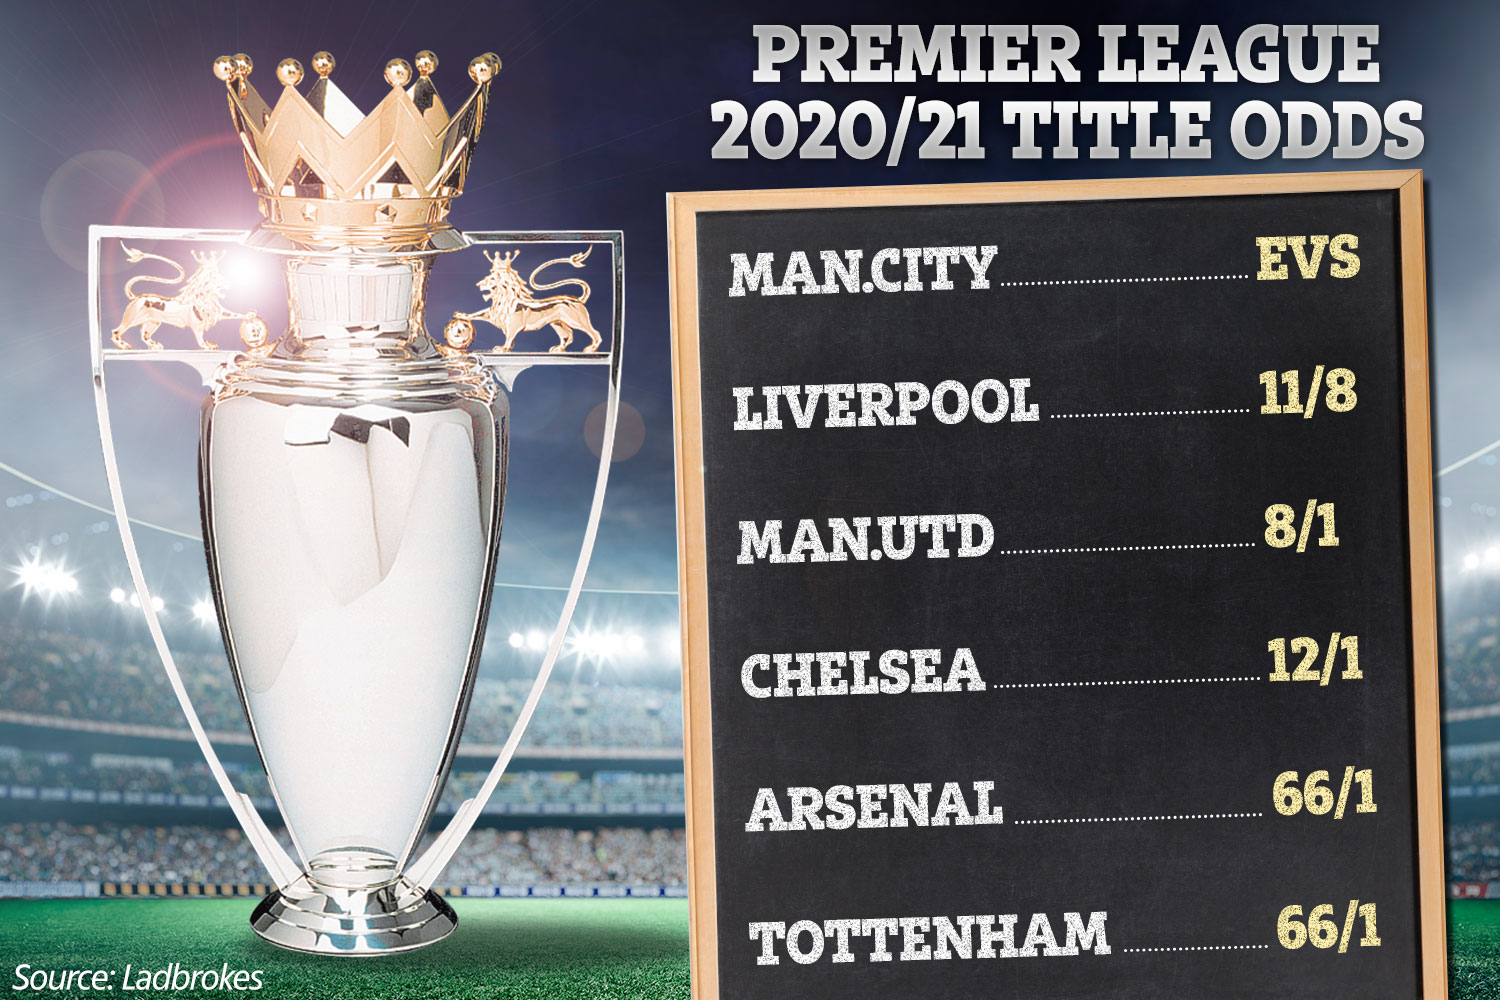 Photo: premier league title odds